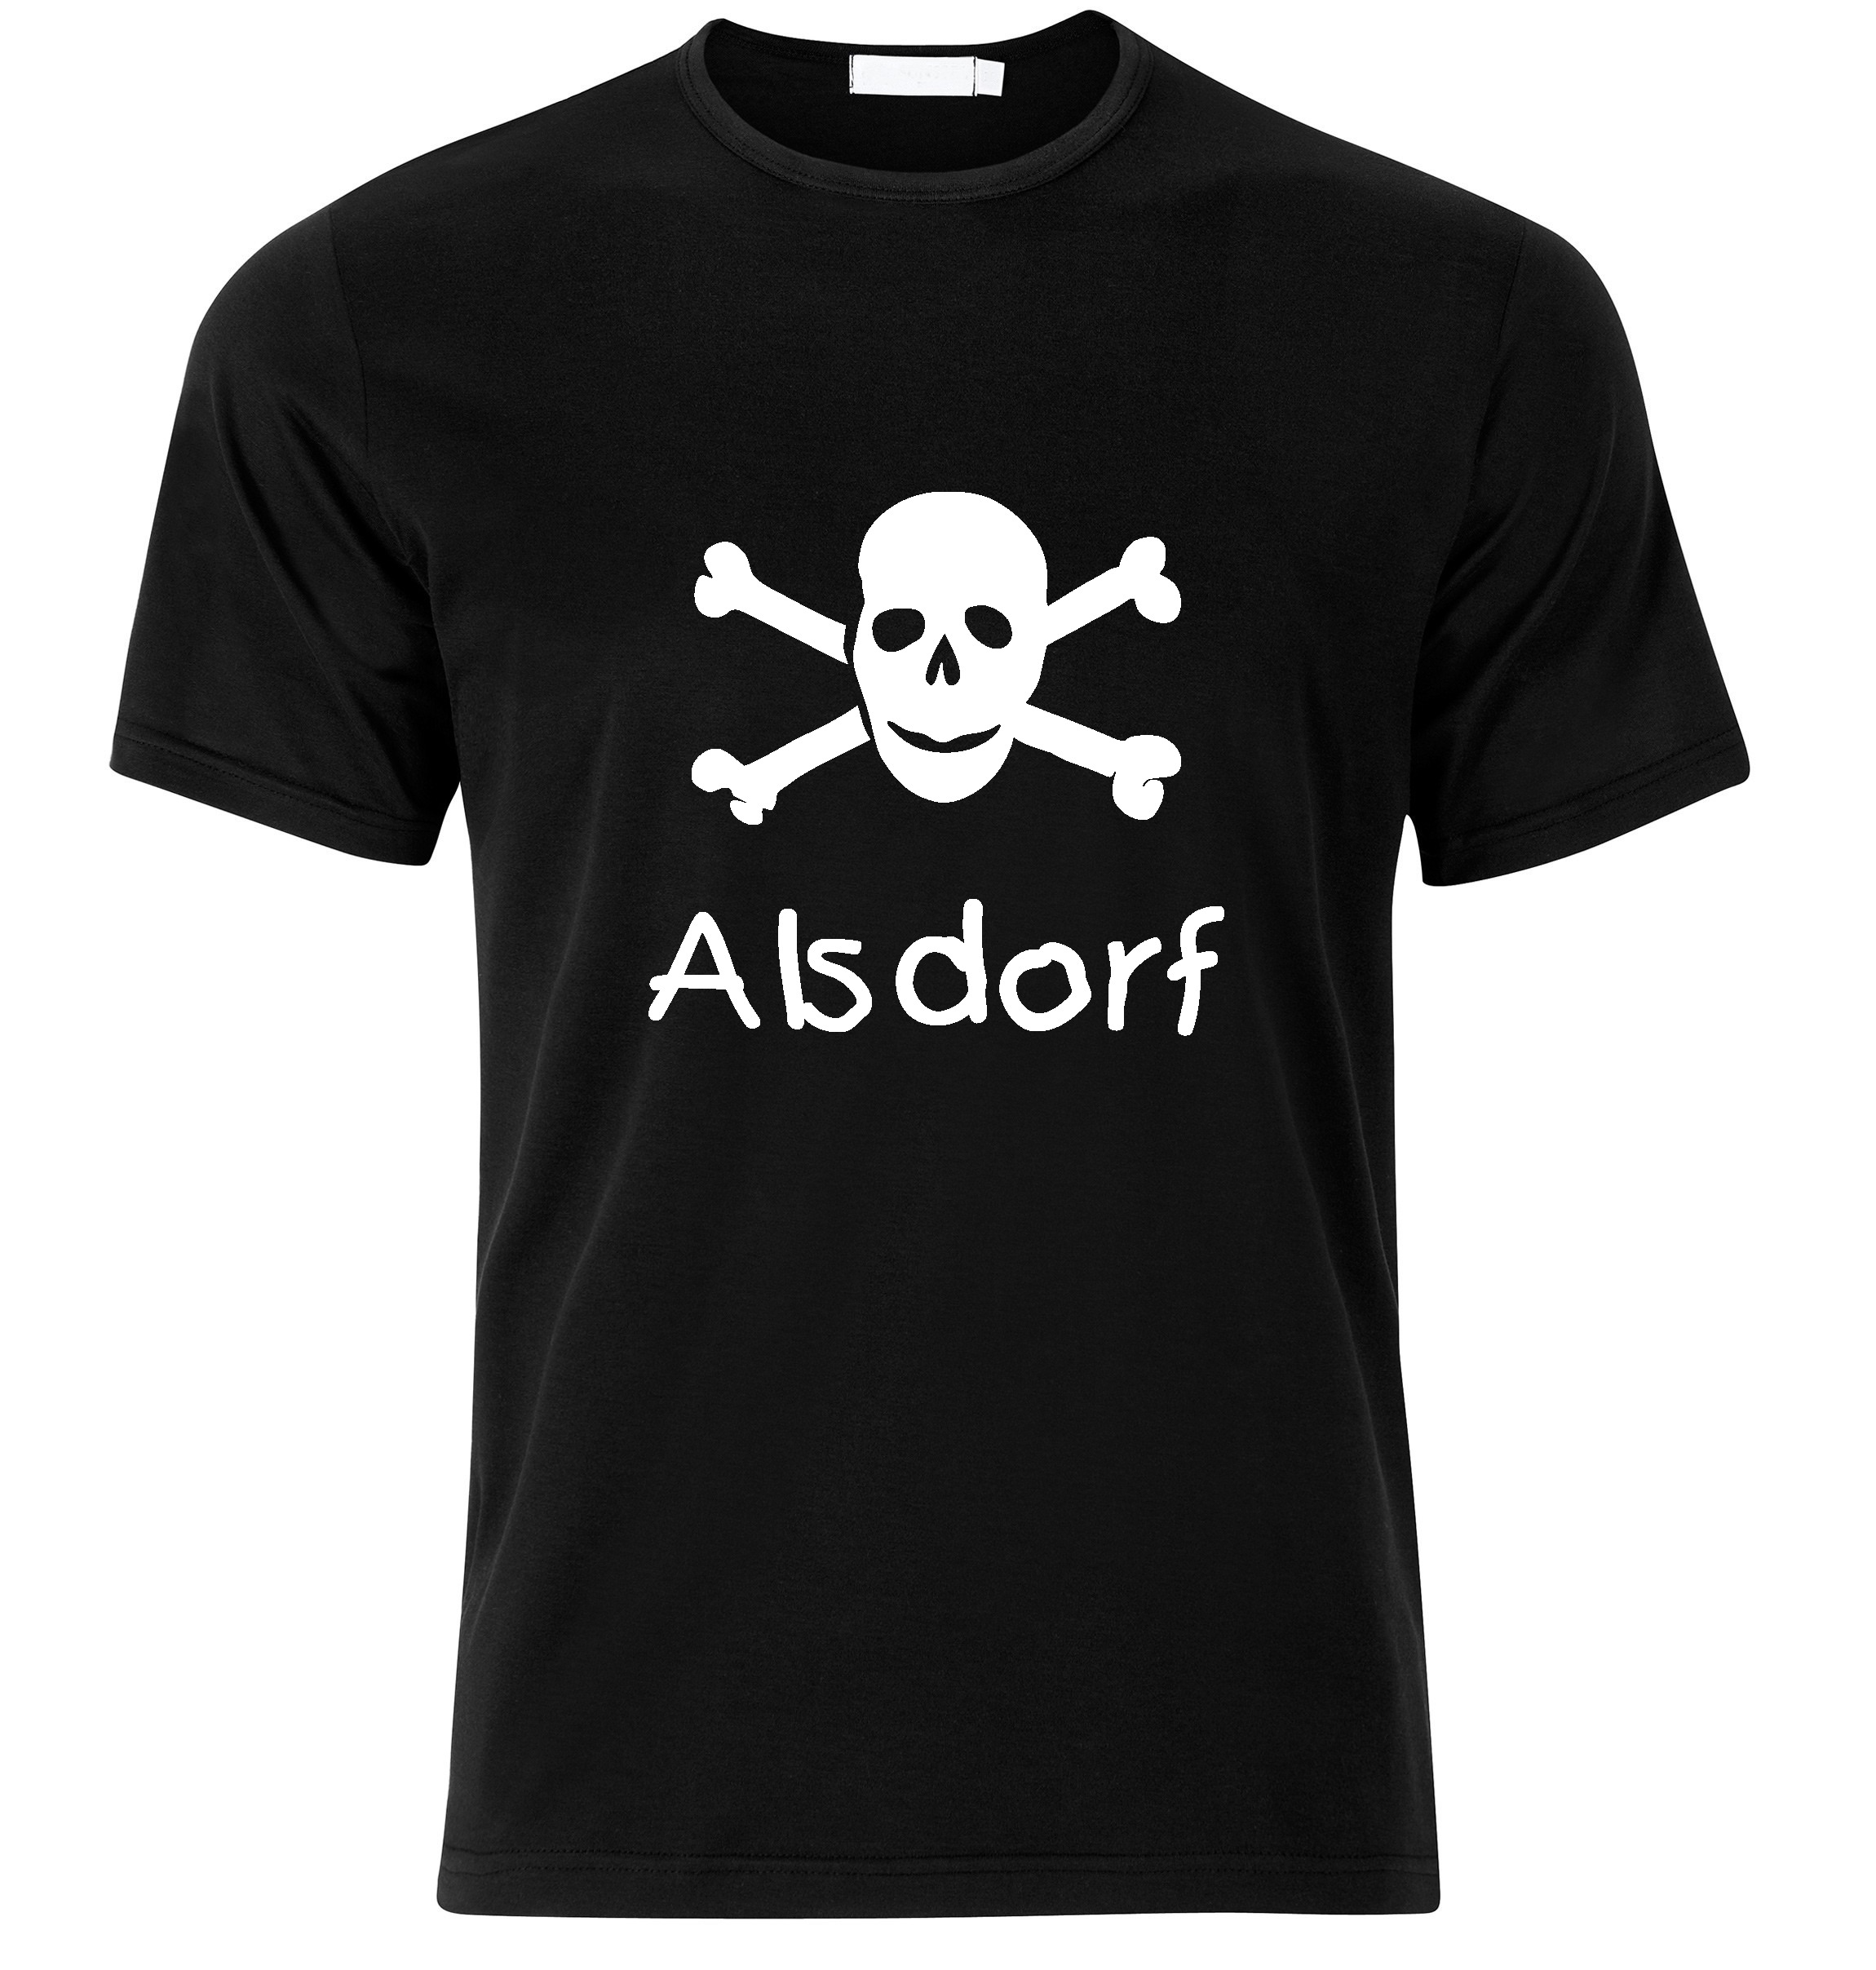 T-Shirt Alsdorf Jolly Roger, Totenkopf